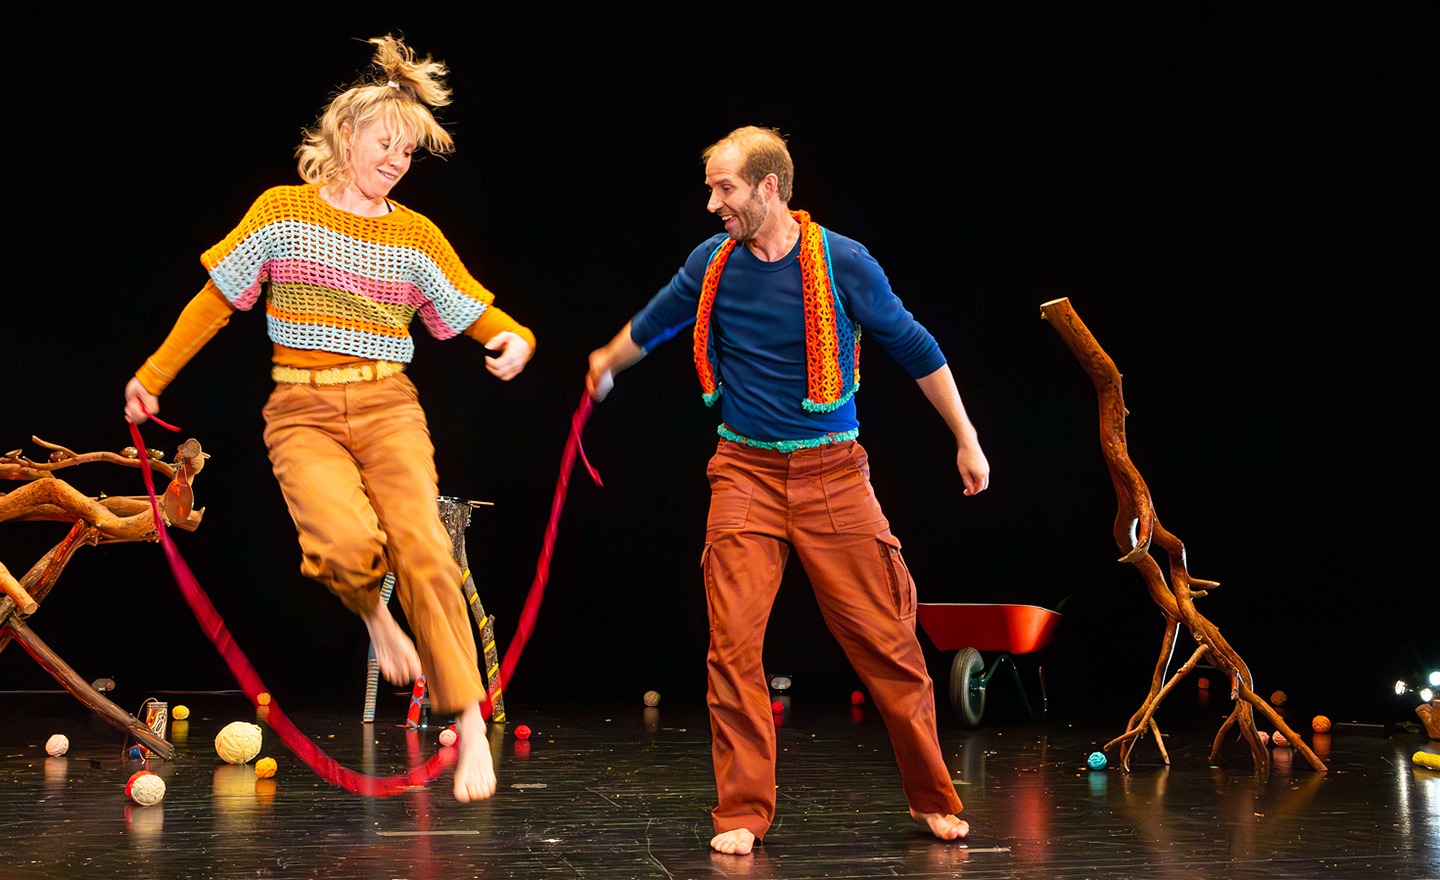 Dansaren Anna hoppar hopprep med Oskar på scenen.